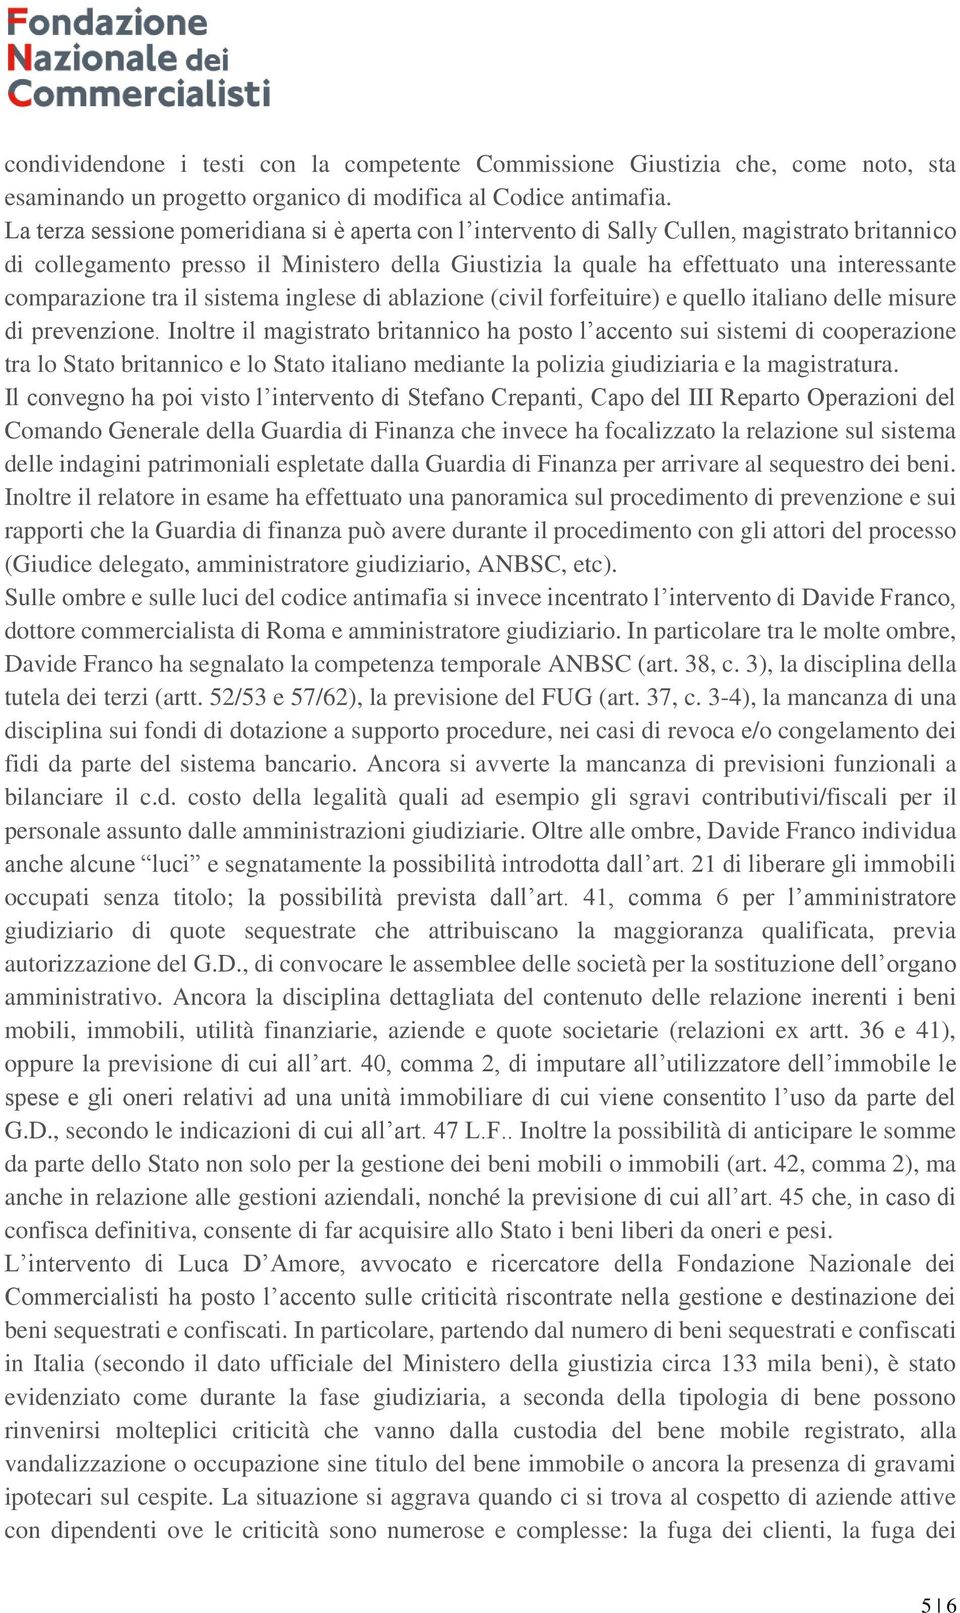 comparazione tra il sistema inglese di ablazione (civil forfeituire) e quello italiano delle misure di prevenzione.